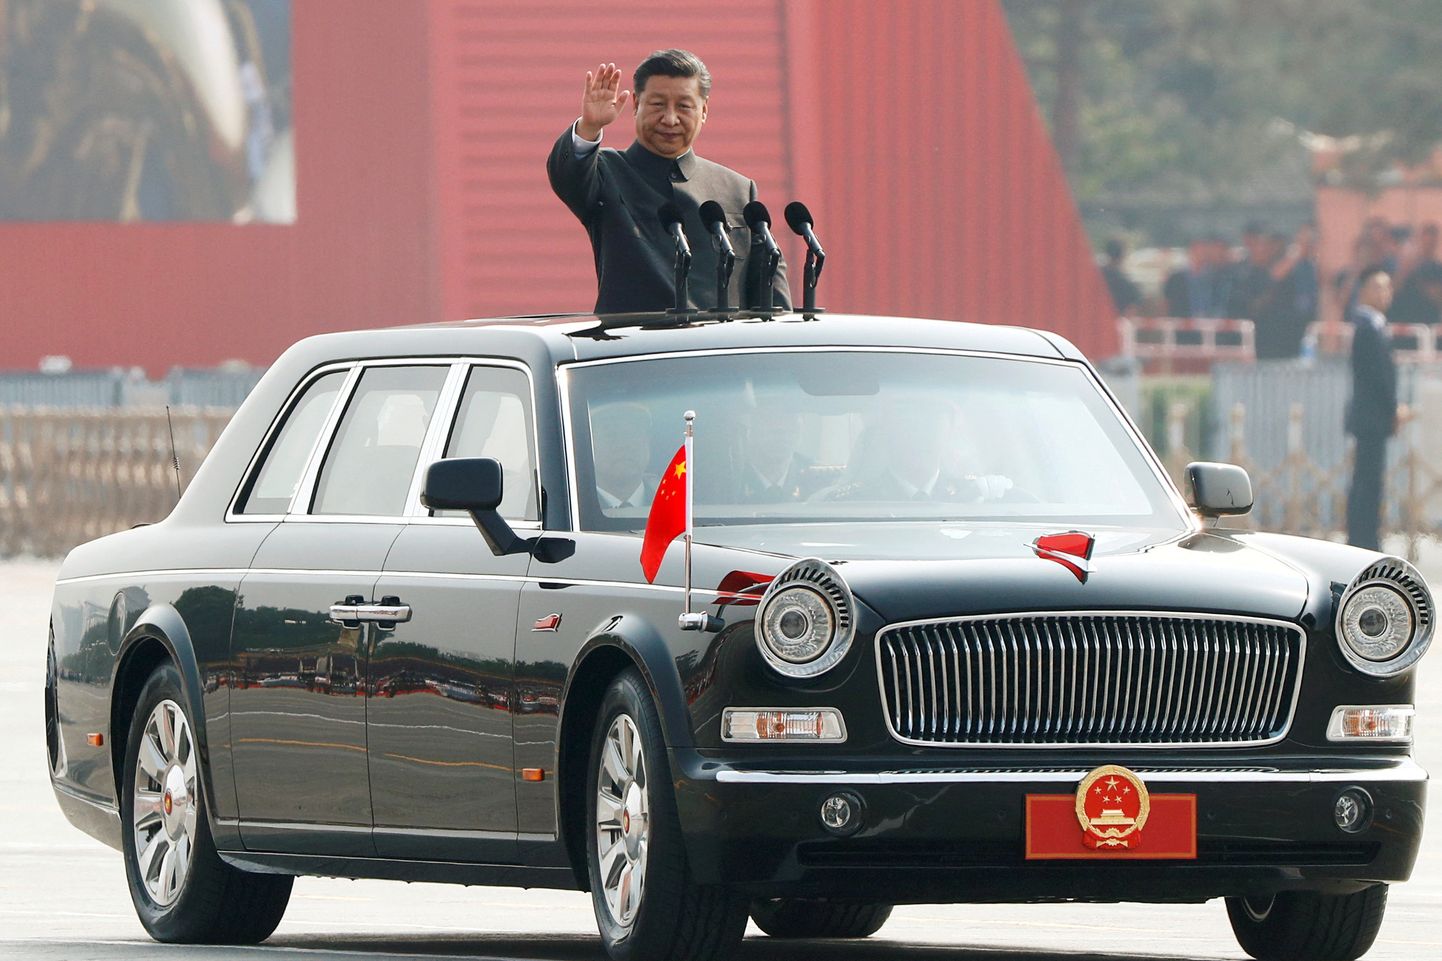 Hiina president Xi Jinping tervitab sõjaväelasi paraadil Pekingis 1. oktoobril 2019